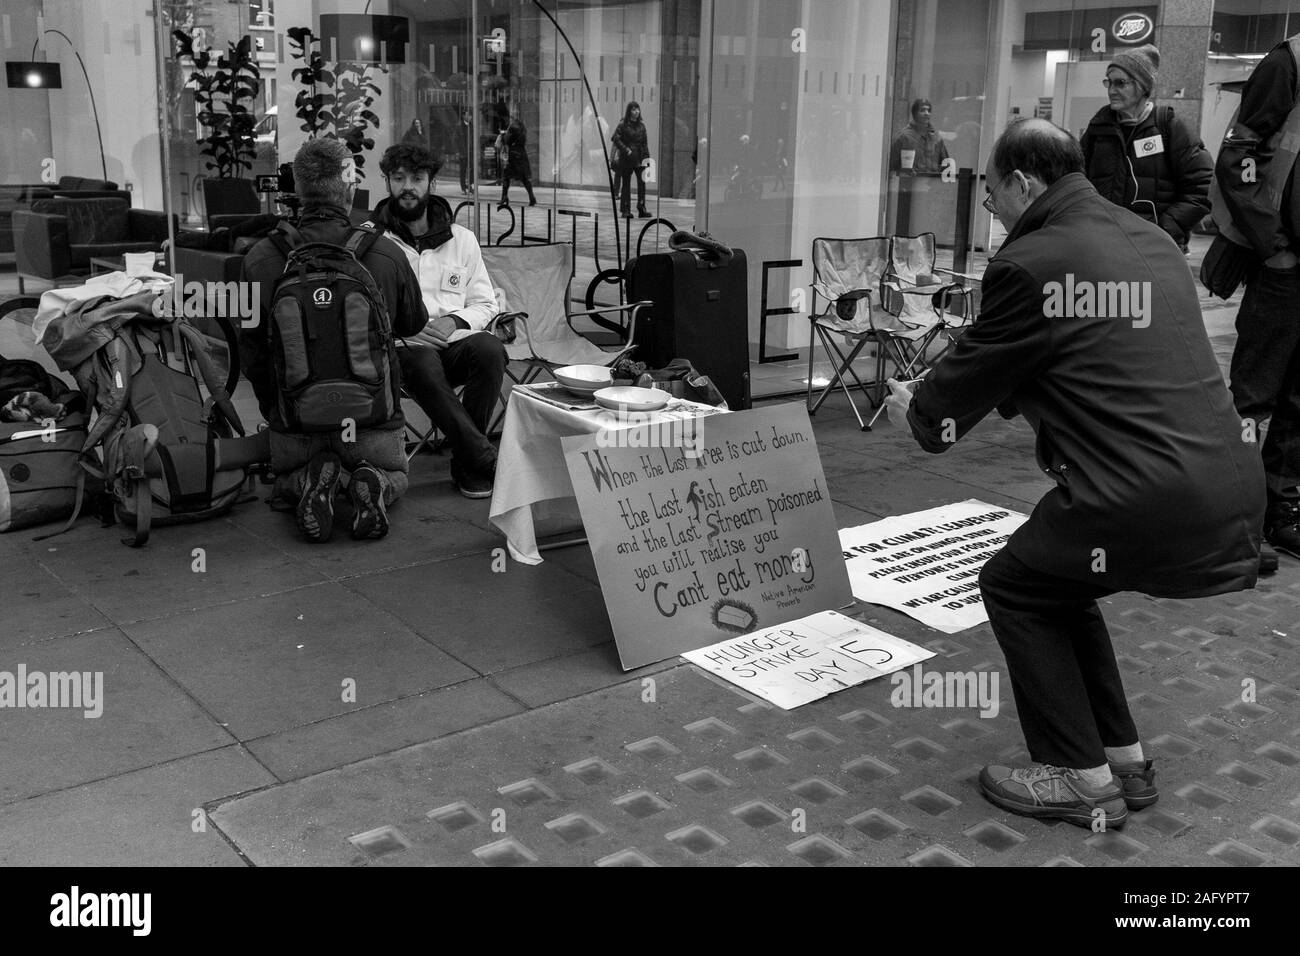 Gréviste de la faim à l'extinction de la rébellion, rue Victoria, Westminster, London, UK Banque D'Images